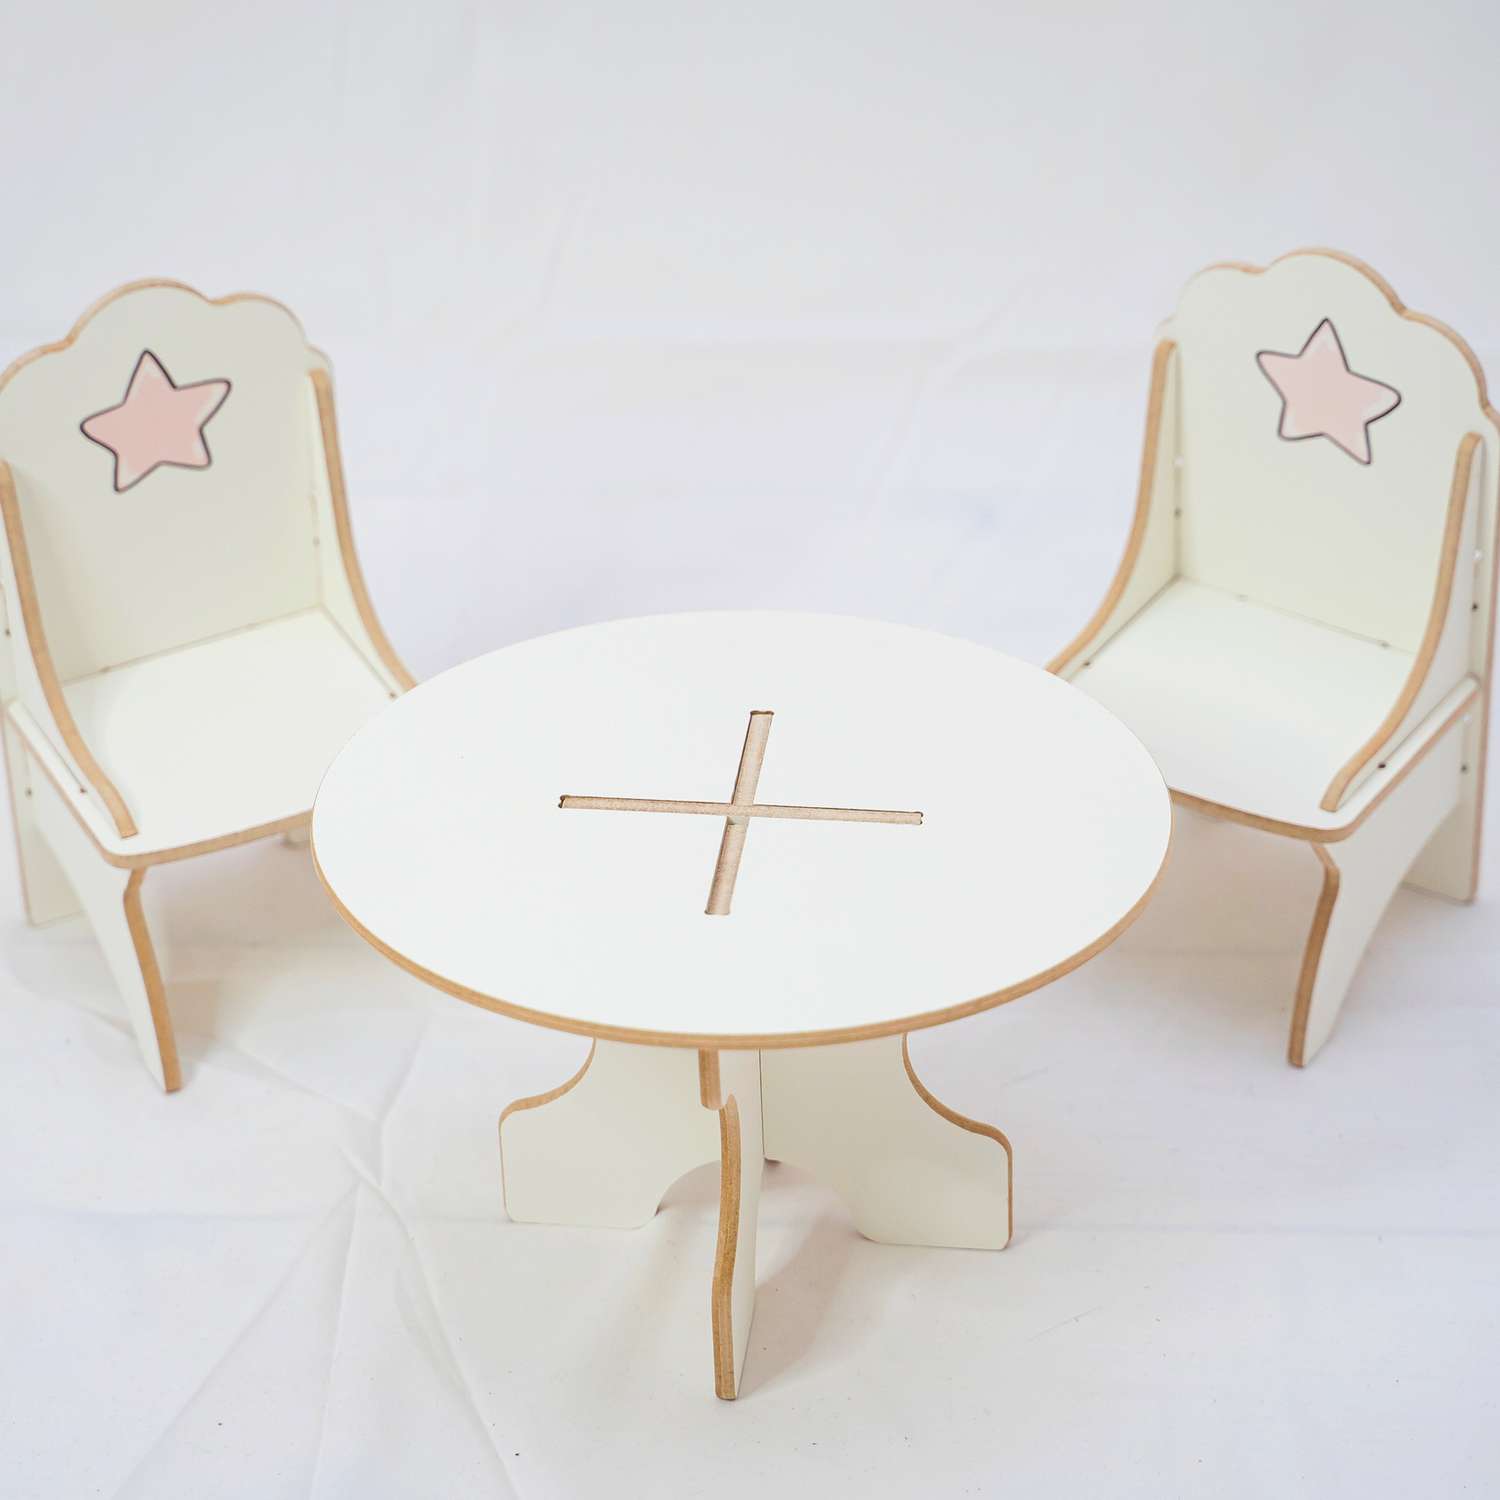 Кукольный набор мебели Alubalu Моня стол и 2 стула 21НМ49 - фото 2